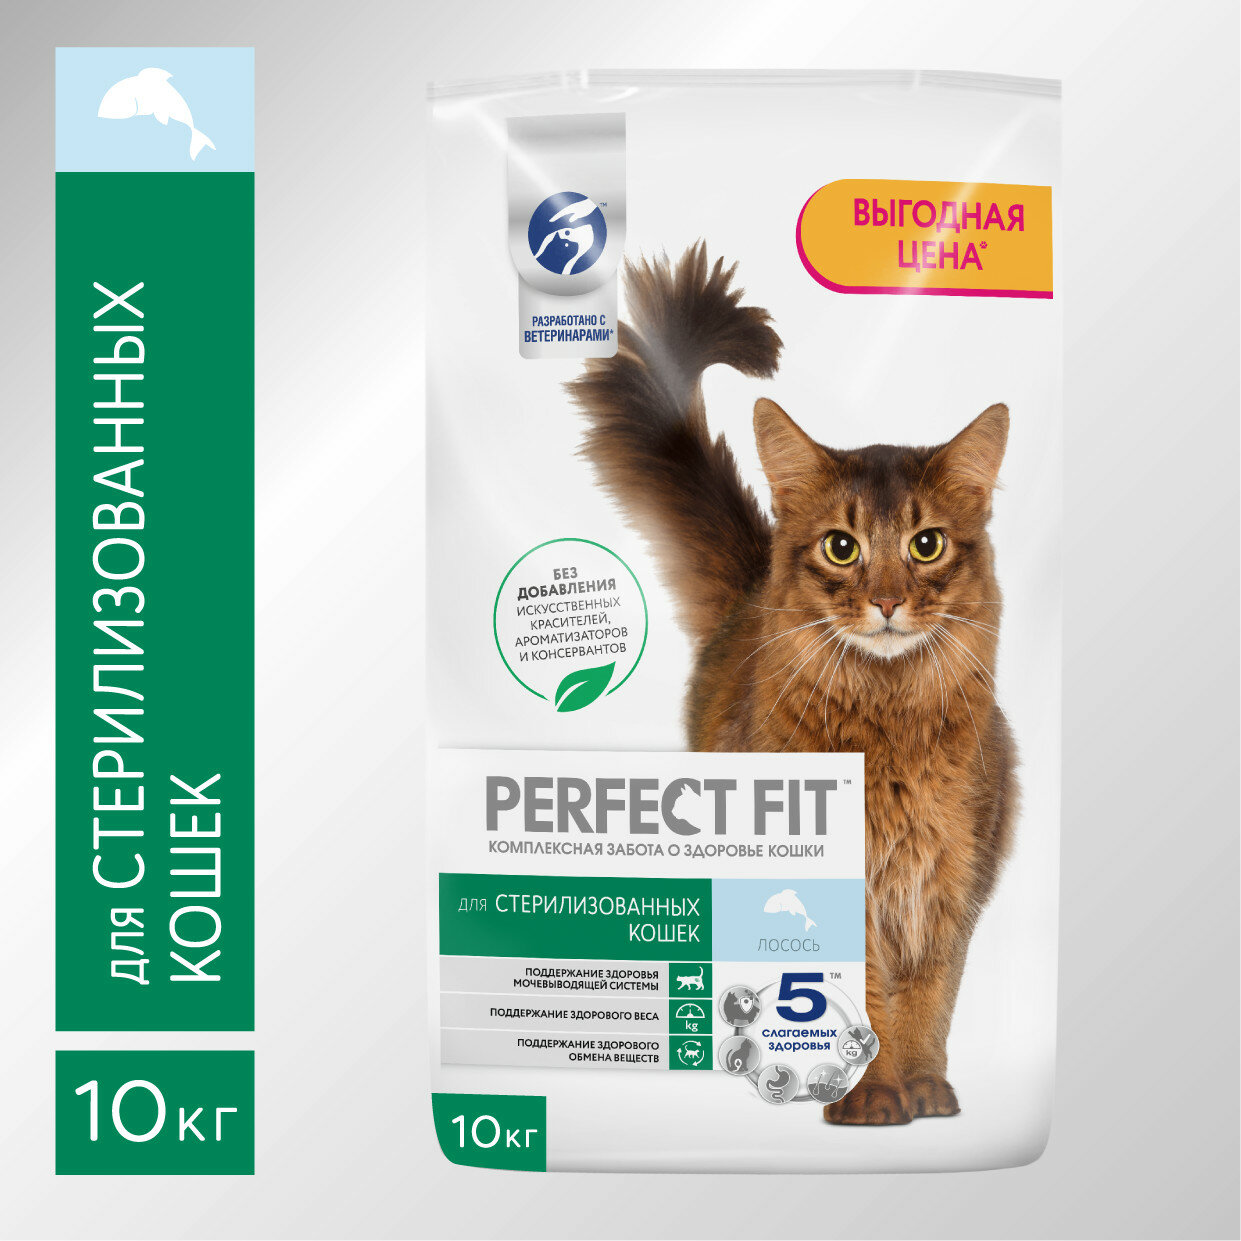 Сухой корм PERFECT FIT™ для стерилизованных кошек, с лососем, 10кг